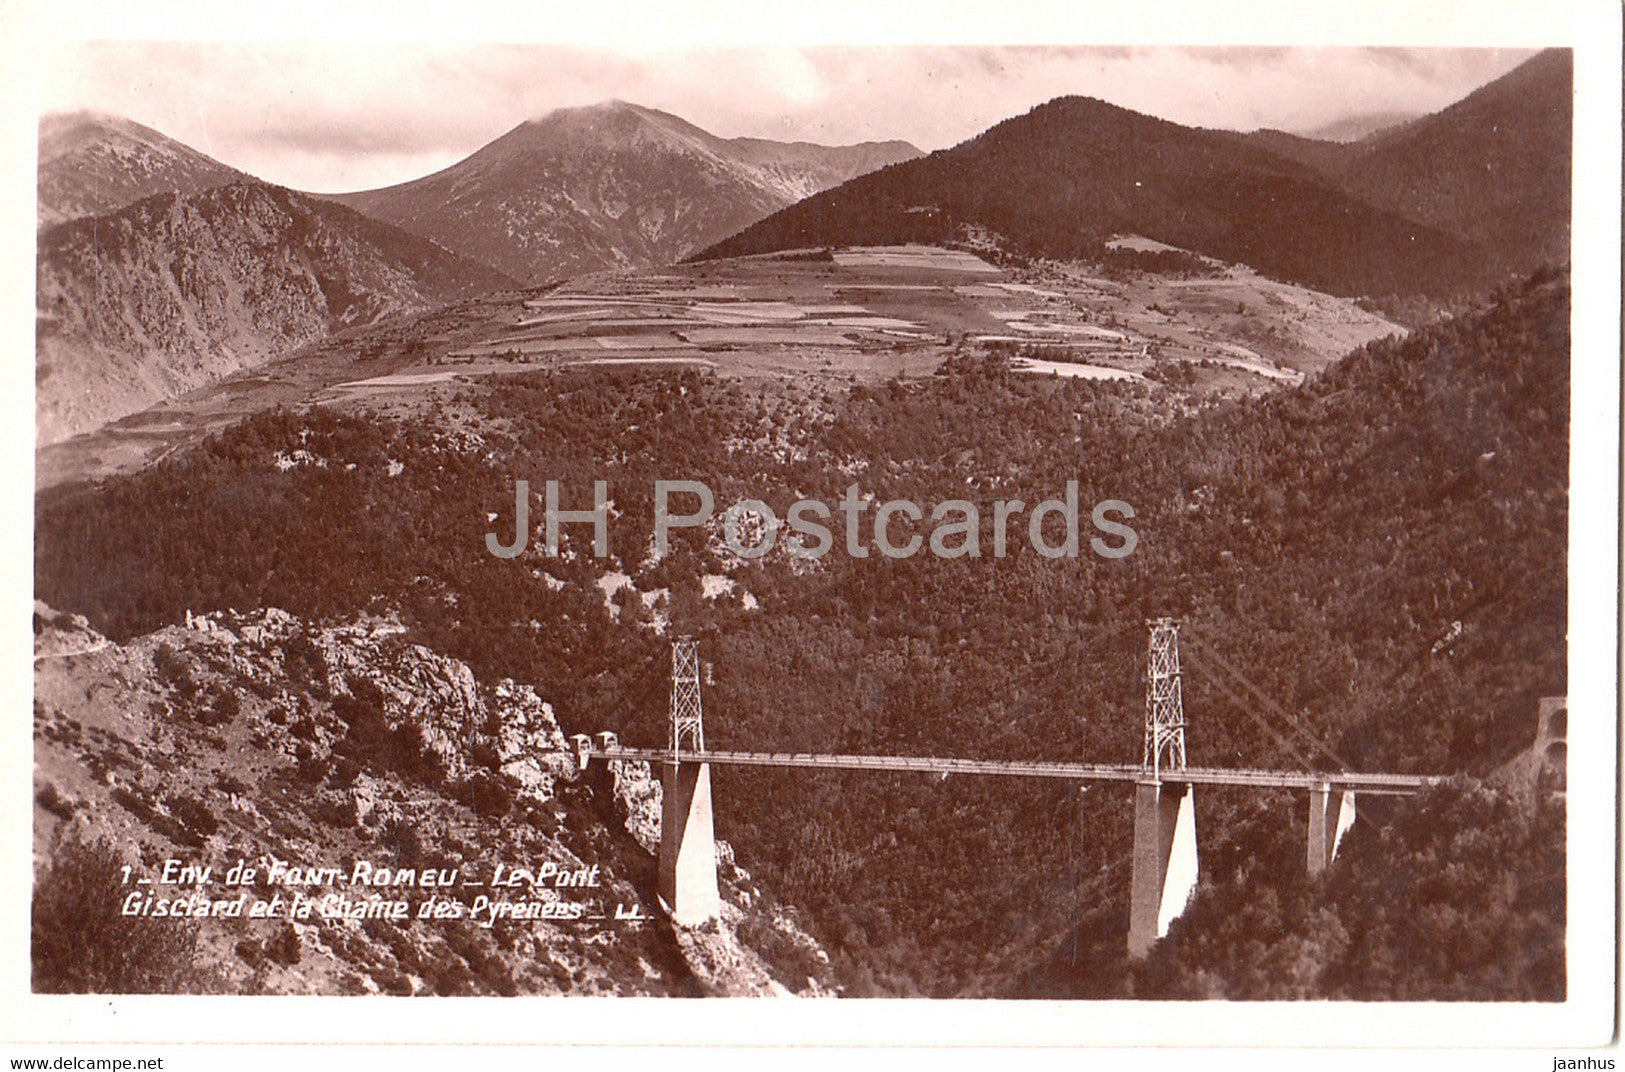 Env de Font Romeu - Le Pont Gisclard et la Chaine des Pyrenees - bridge - 1 - old postcard - France - unused - JH Postcards